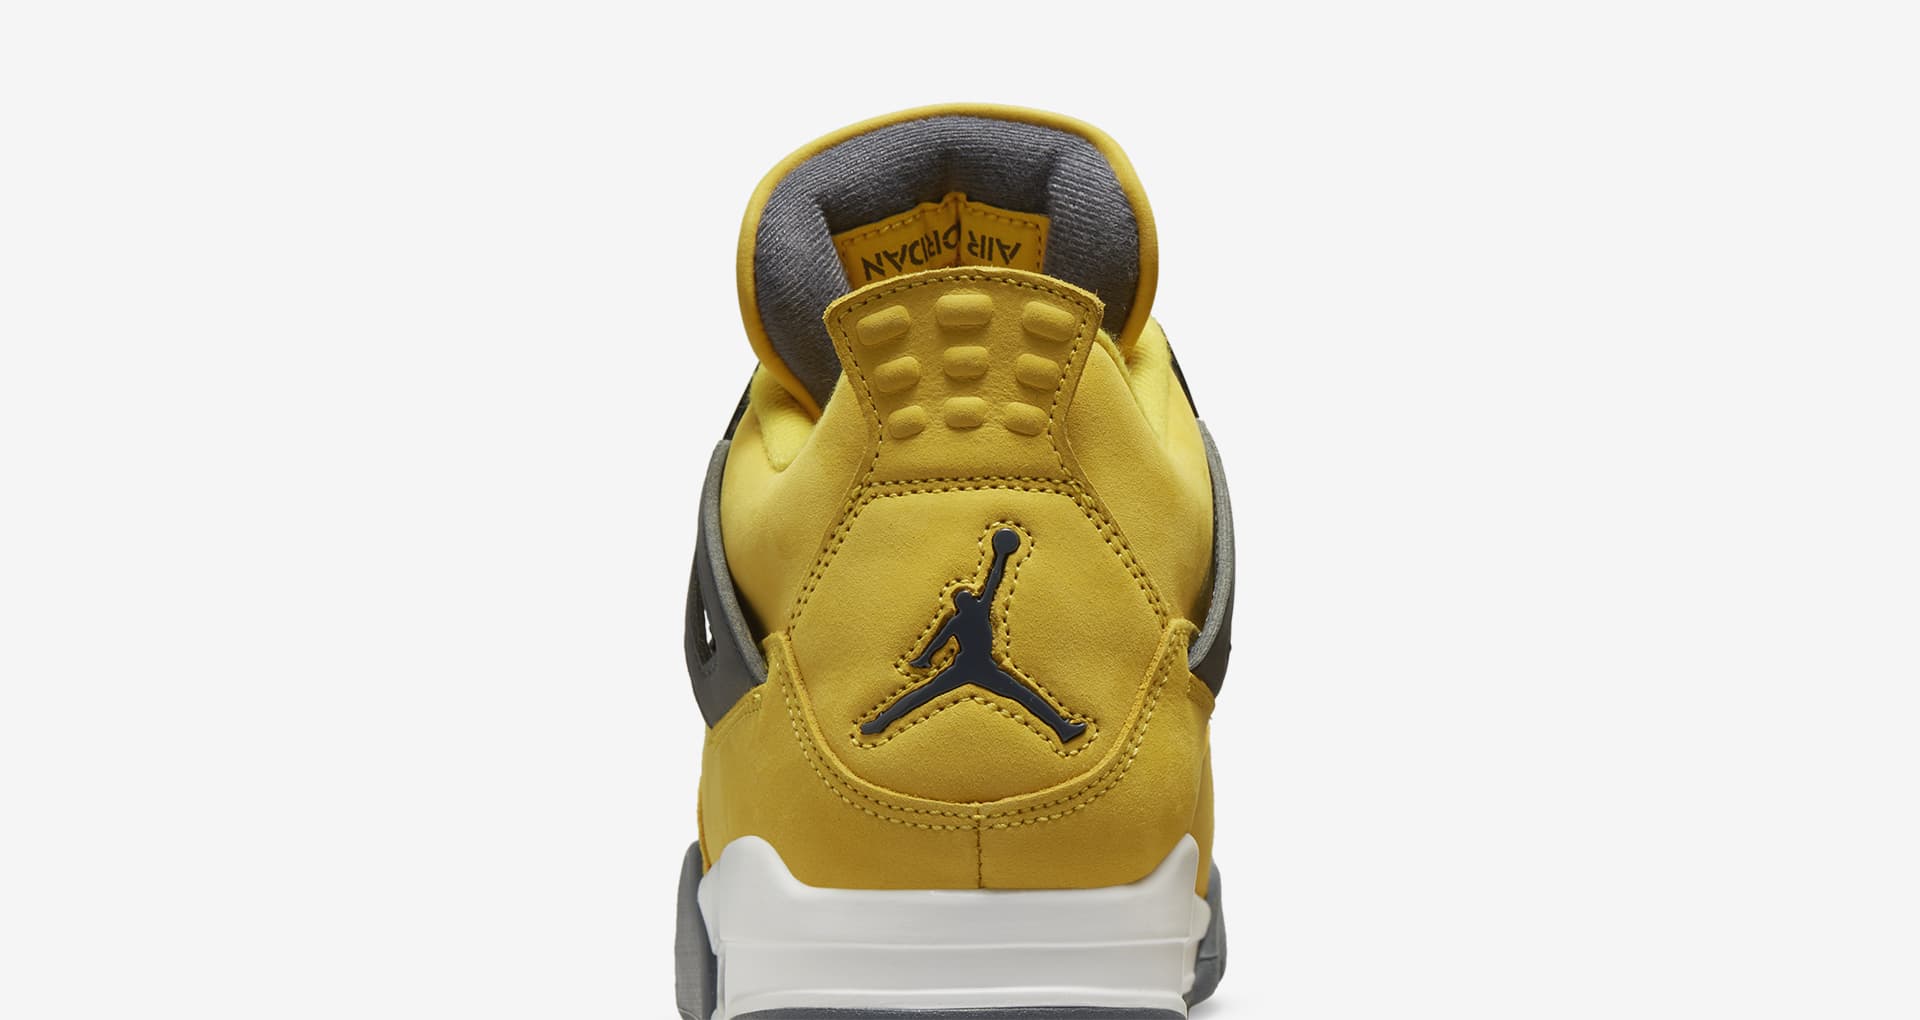 Air Jordan 4 'Tour Yellow' Release Date